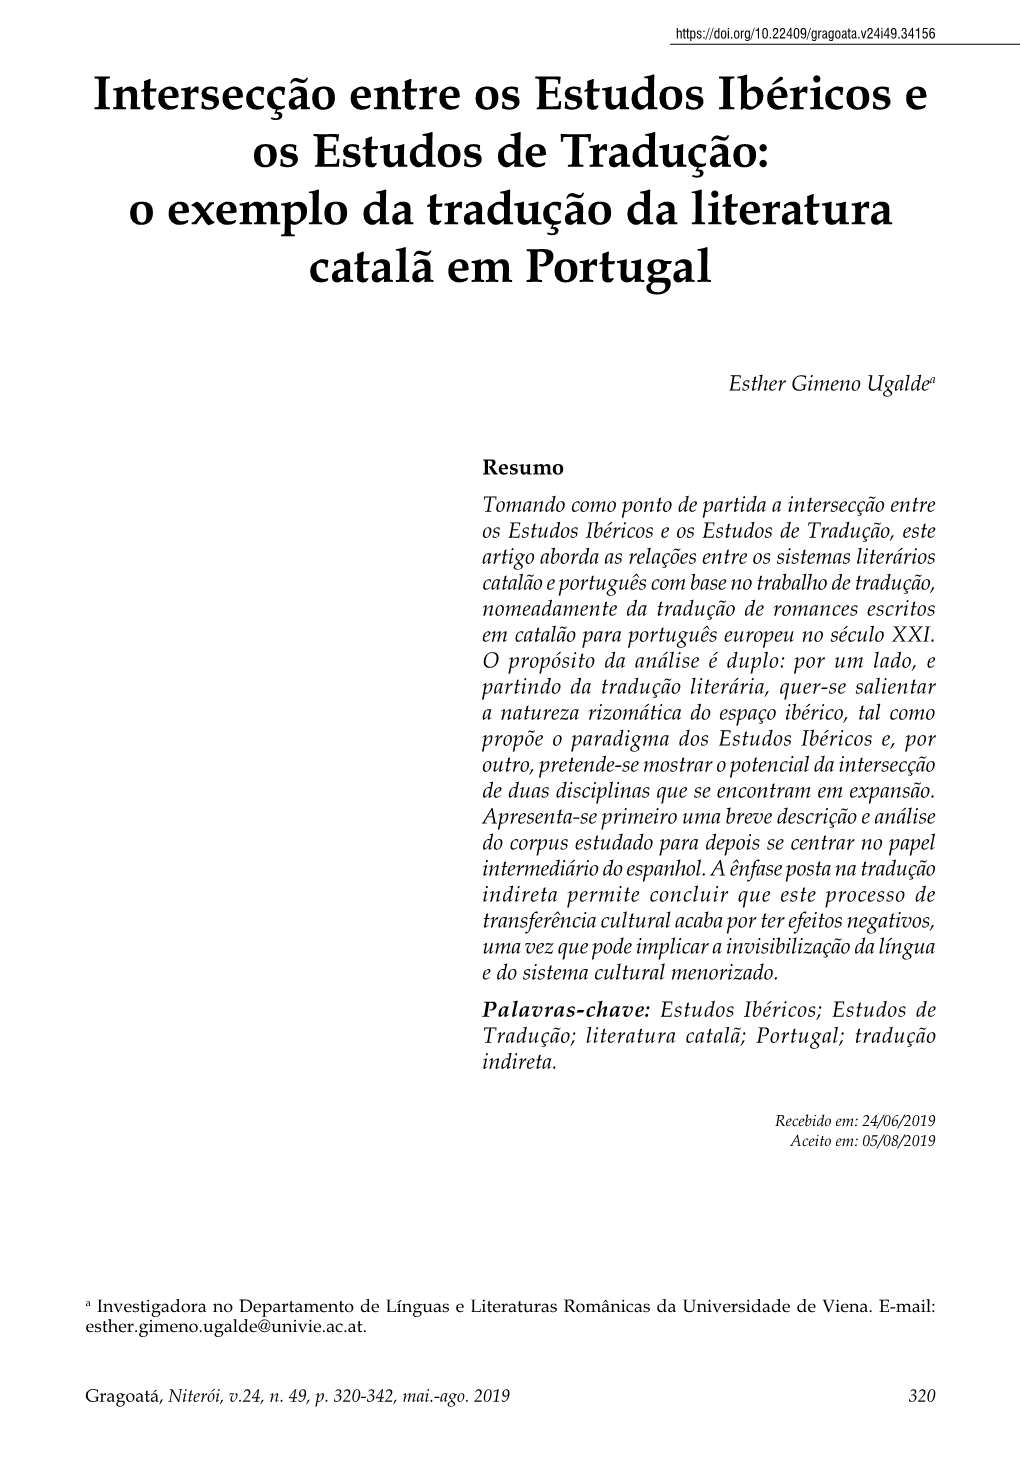 O Exemplo Da Tradução Da Literatura Catalã Em Portugal